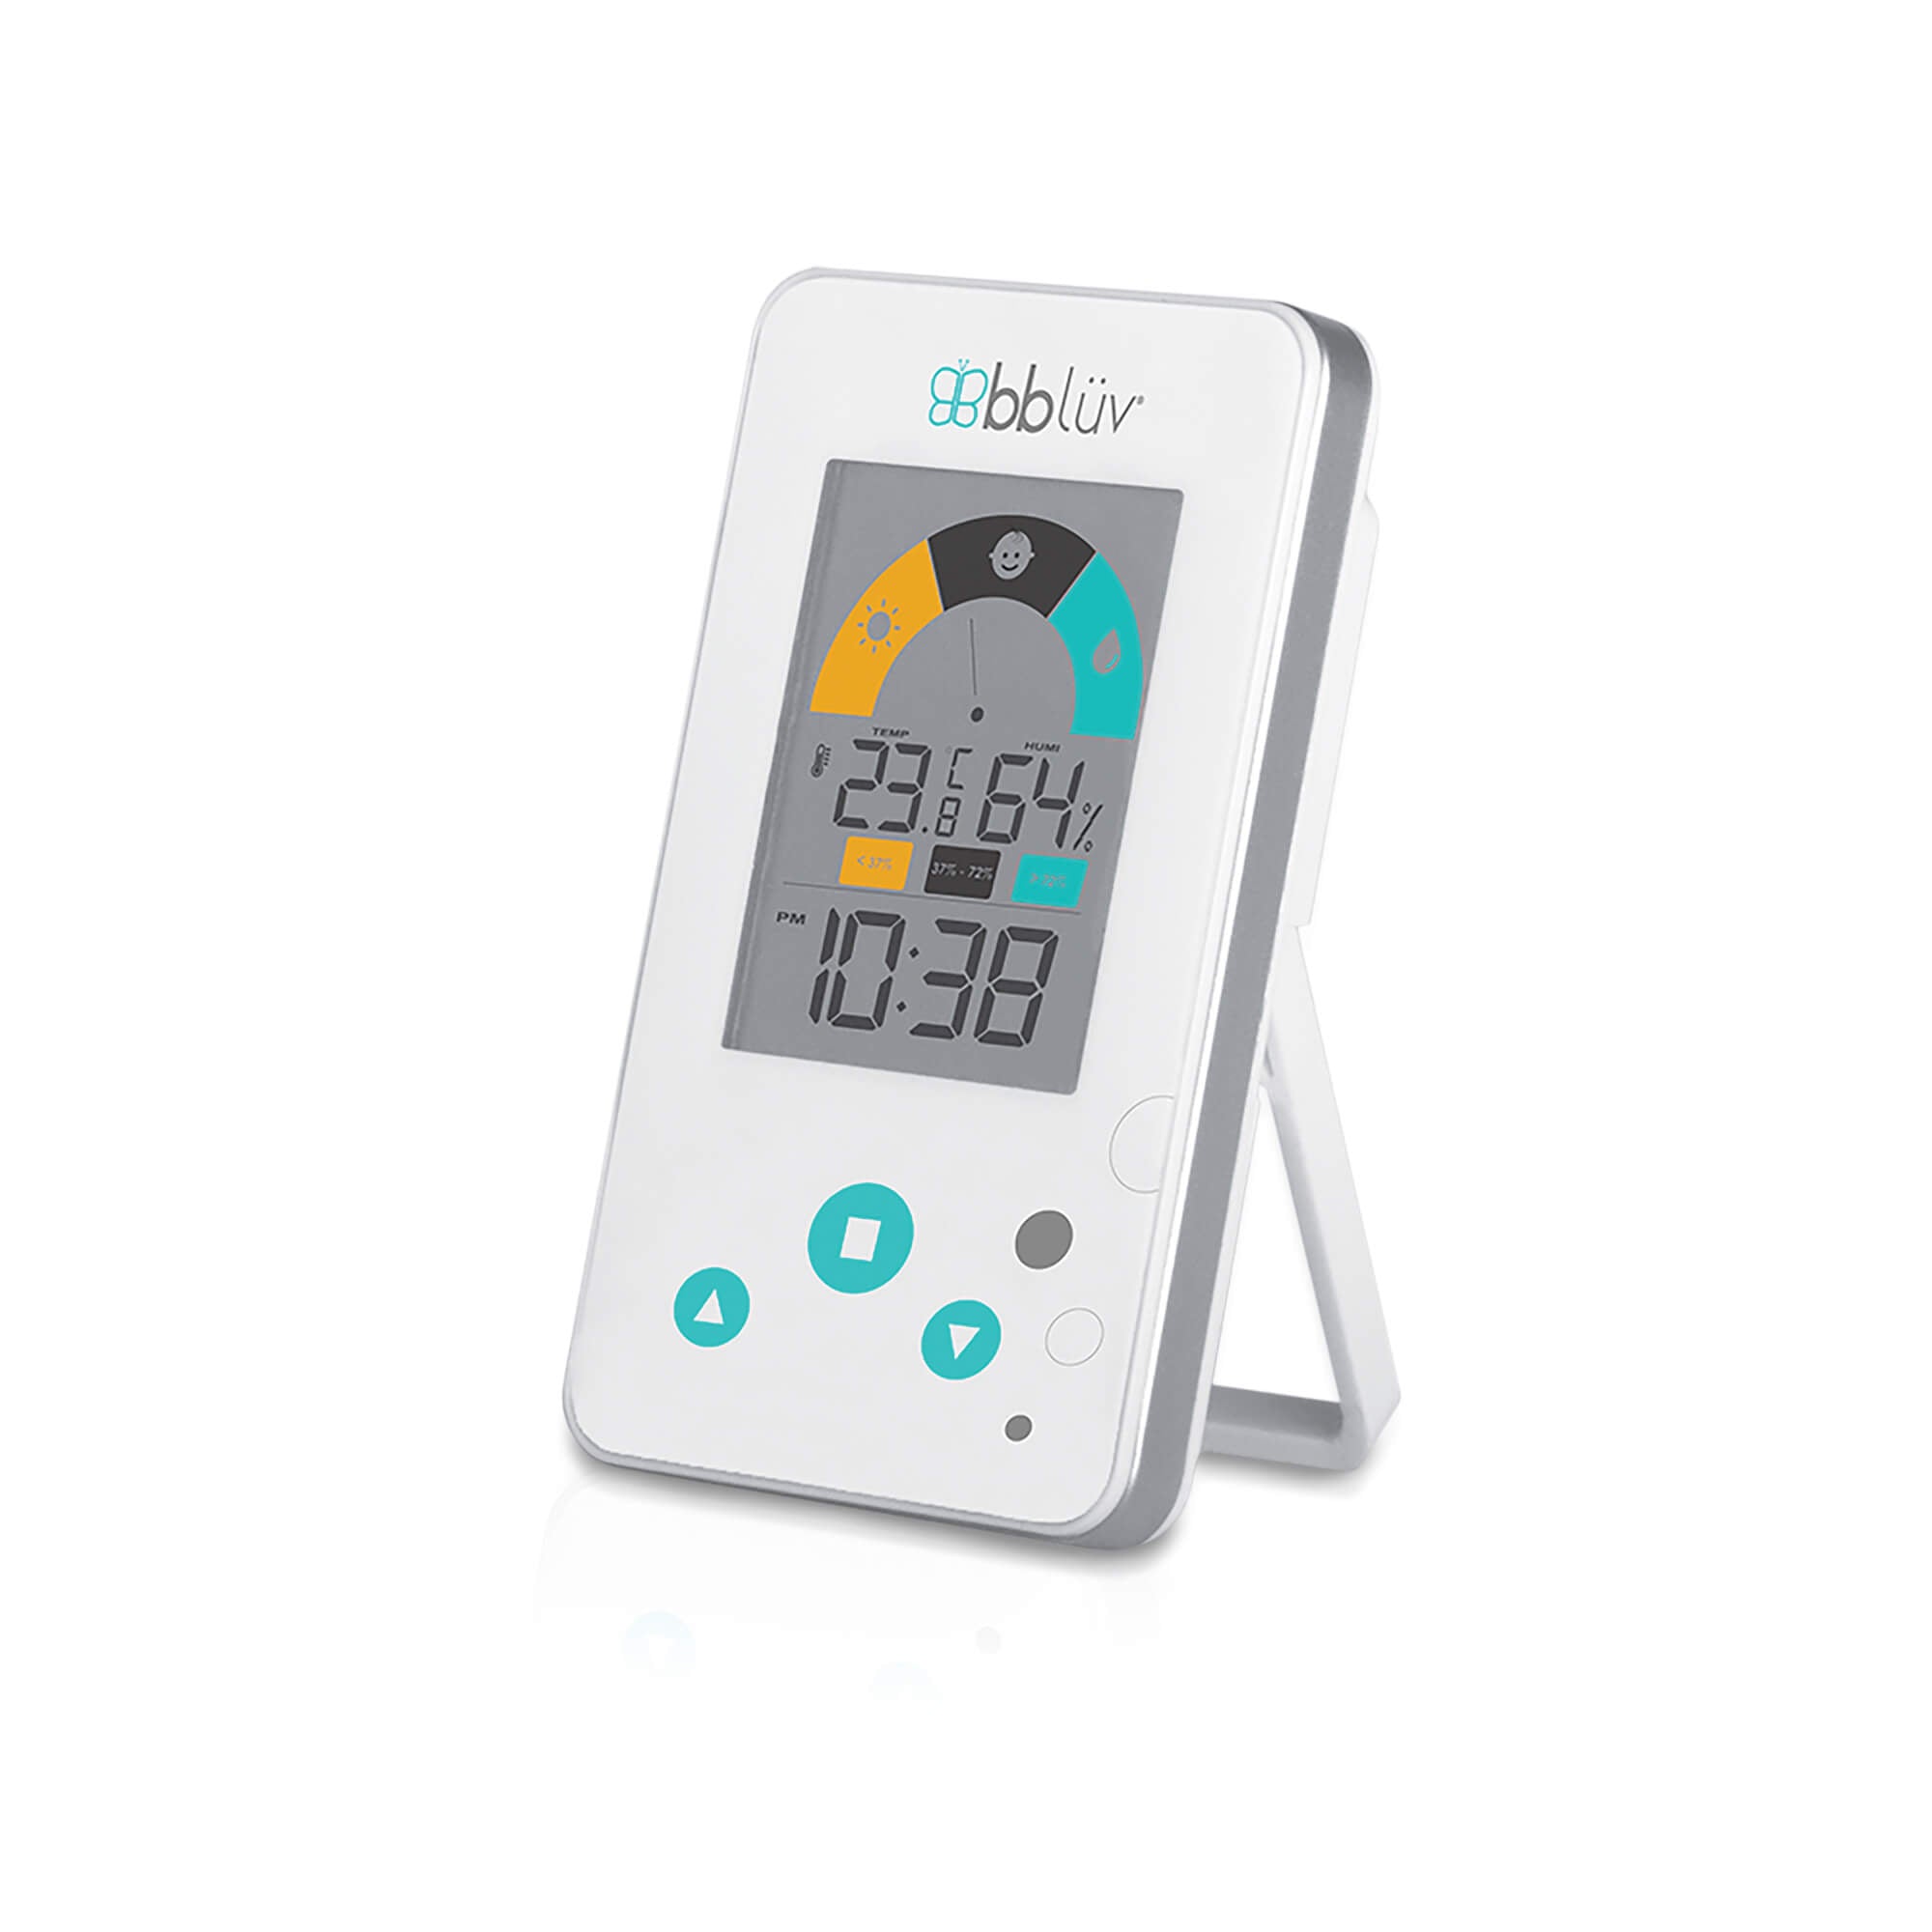 Thermomètres pour bébé - CITYMALL